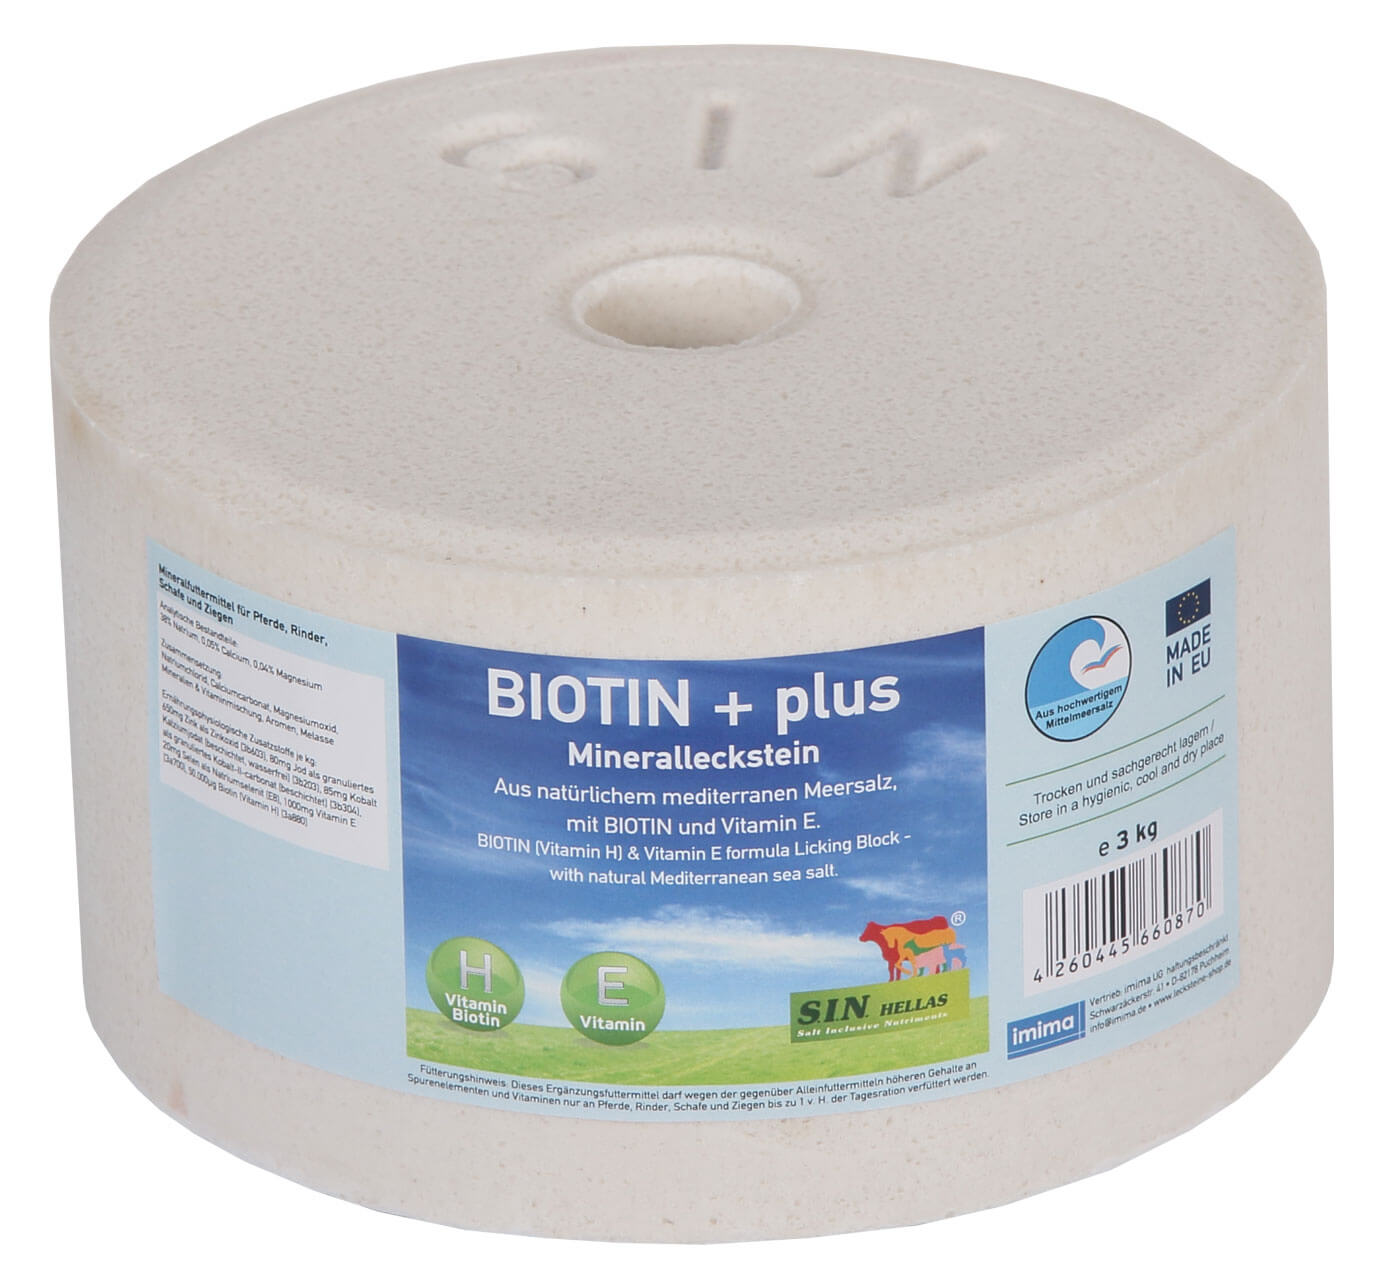 S.I.N. HELLAS Biotin+ plus Mineralleckstein 1 x 3 kg